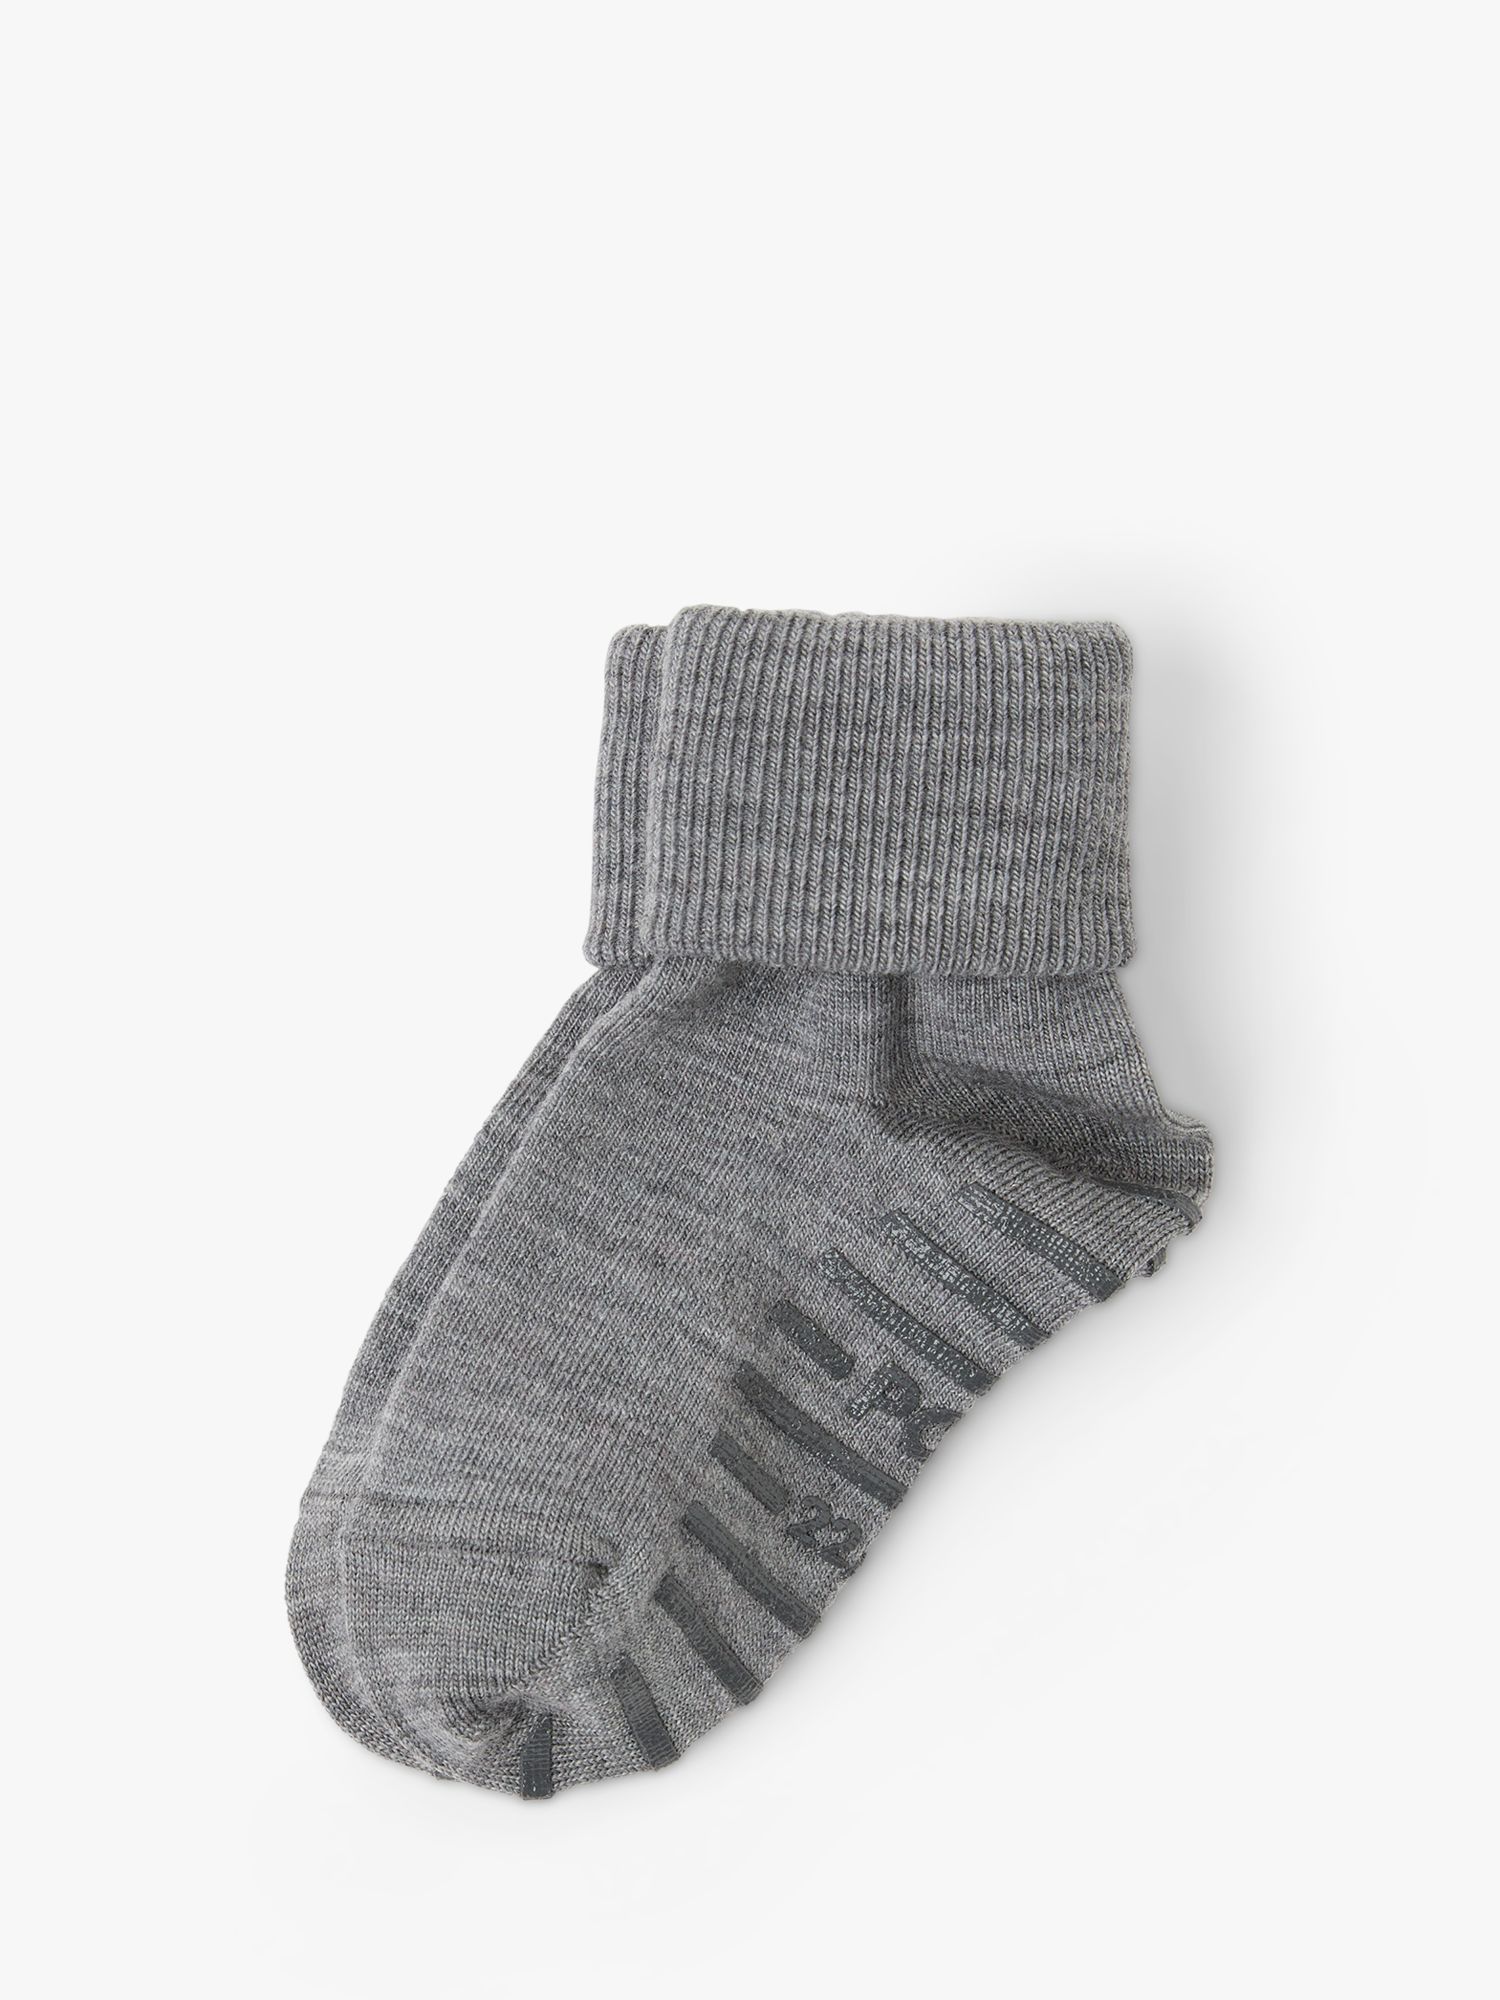 Buy Polarn O. Pyret Kids' Merino Blend Slipper Socks Online at johnlewis.com